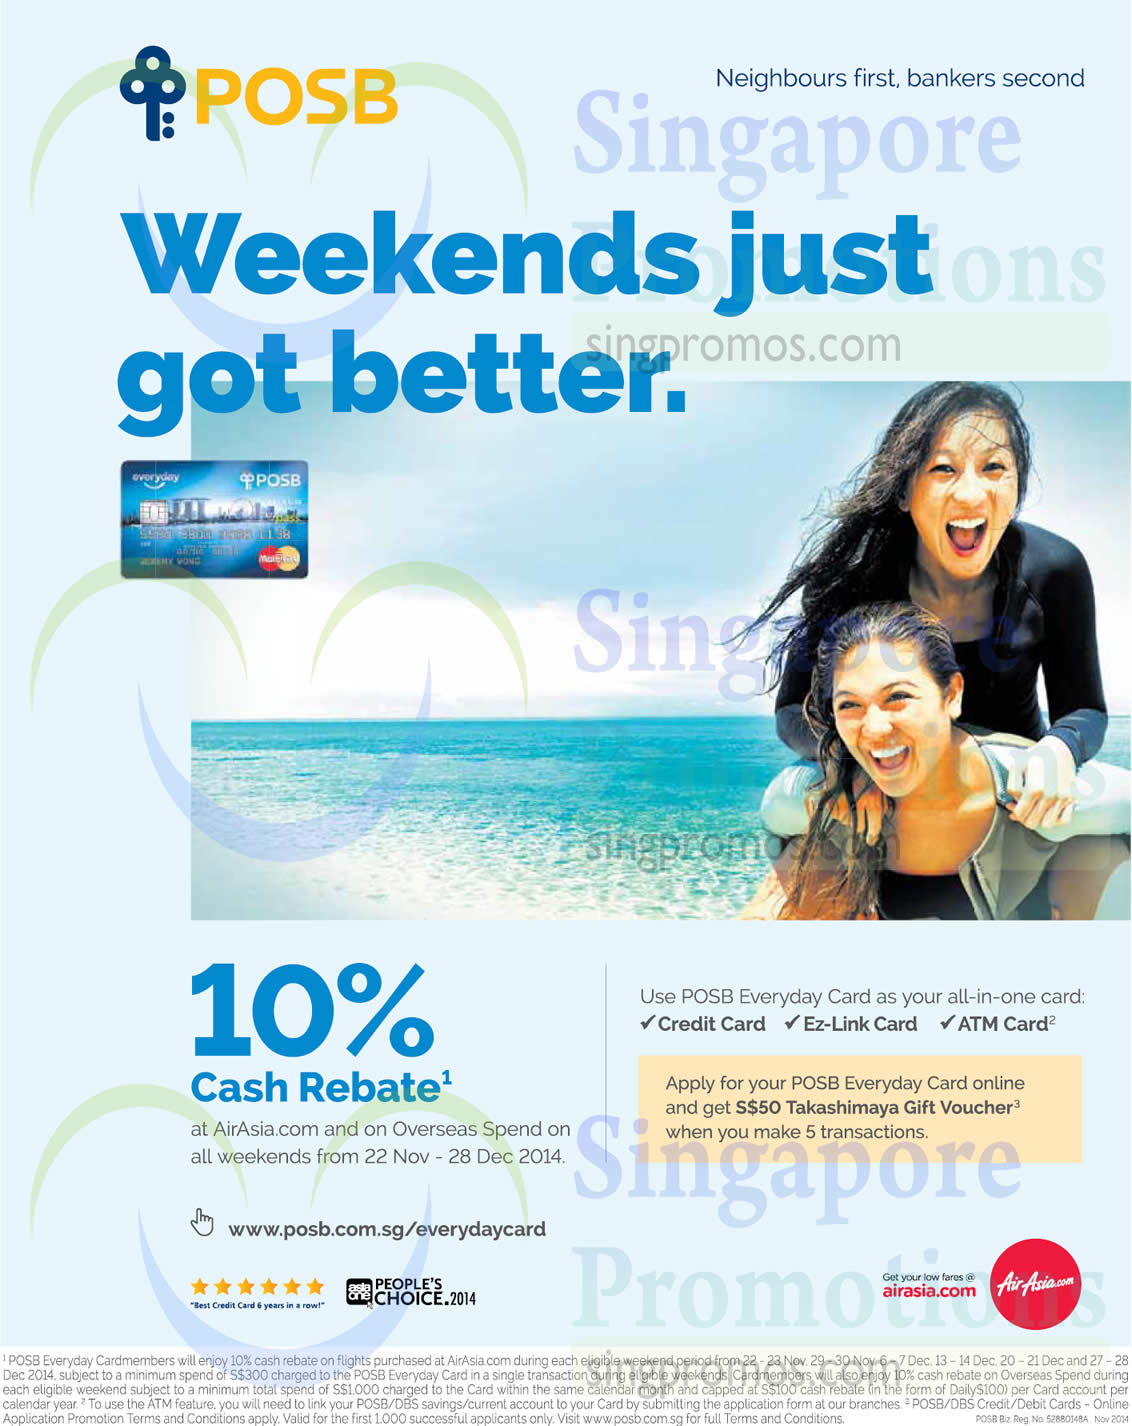 posb-everyday-10-cash-rebate-air-asia-overseas-spend-weekends-promo